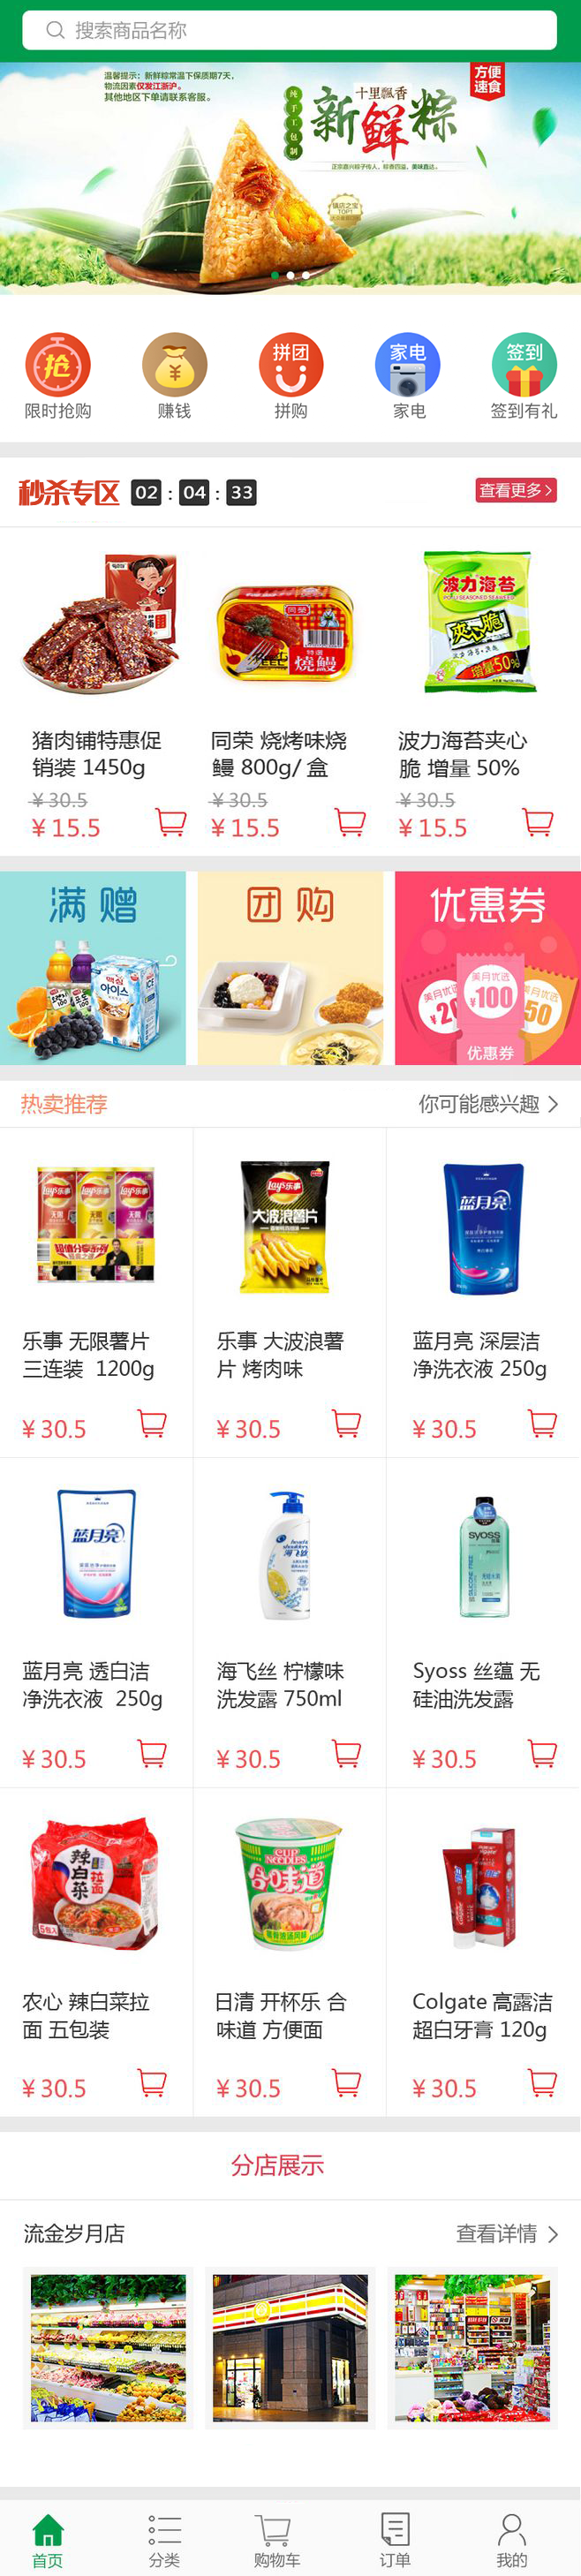 乐鑫购物商城手机app首页模板